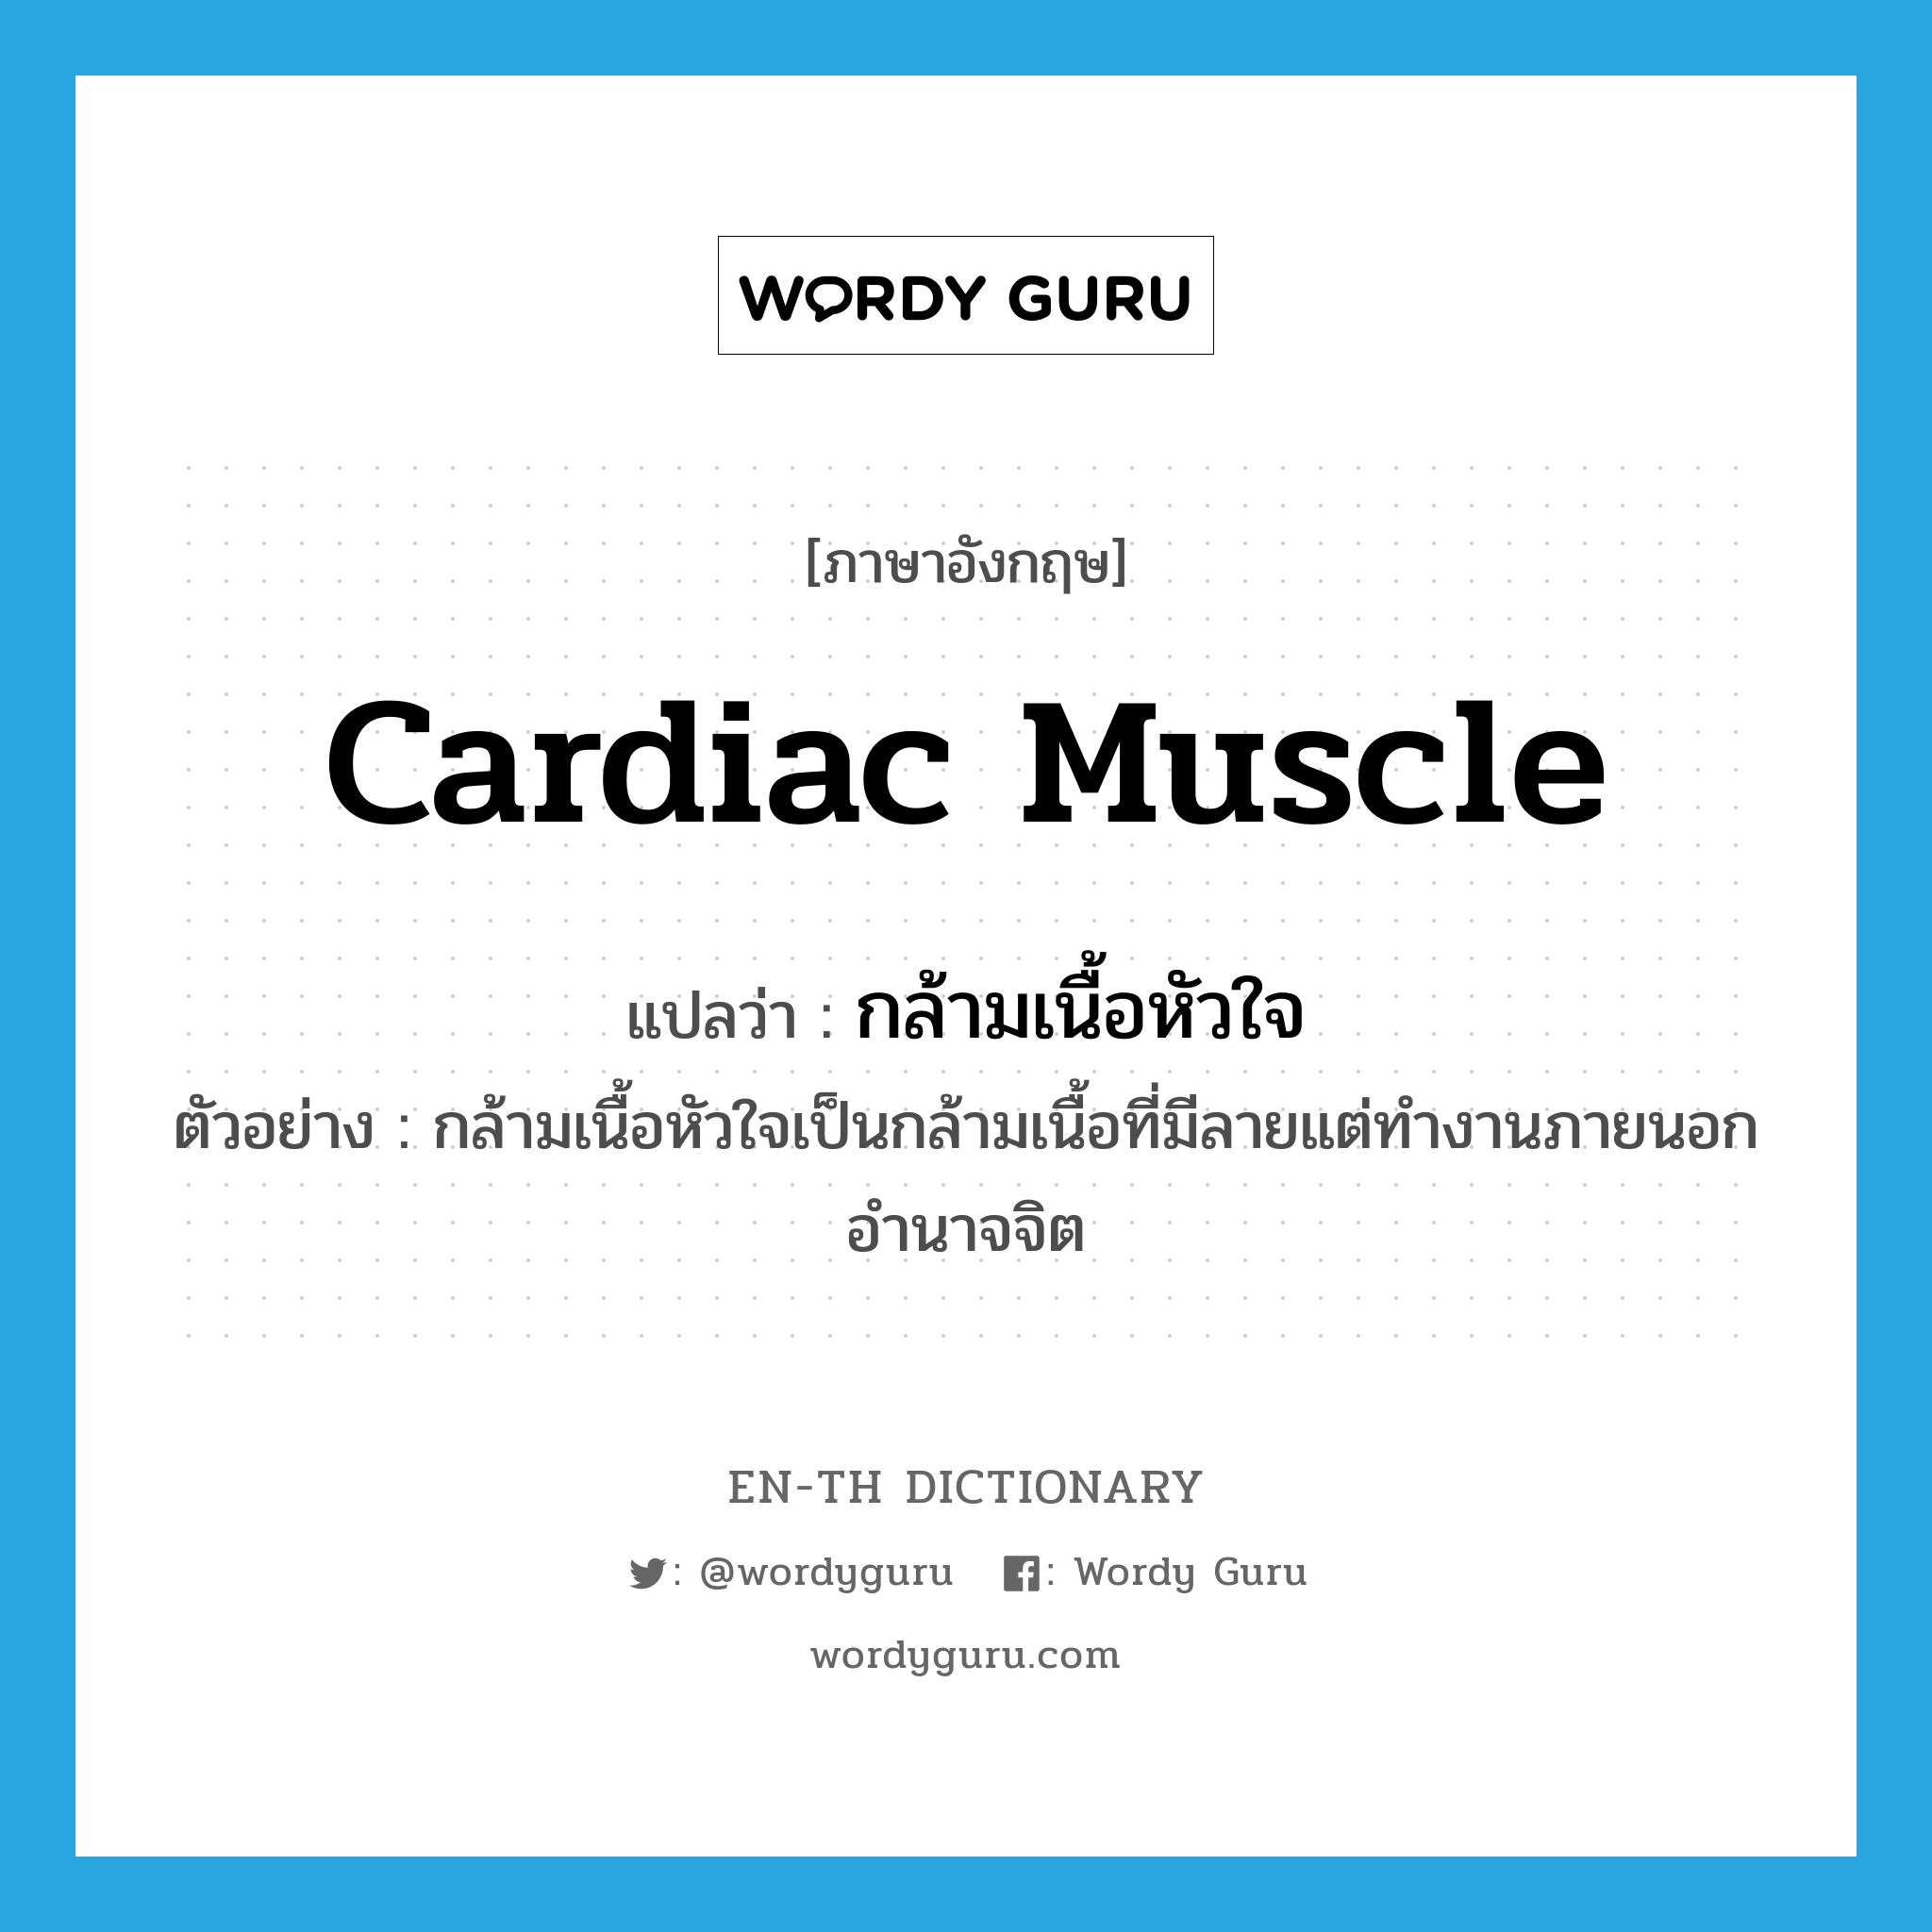 cardiac muscle แปลว่า?, คำศัพท์ภาษาอังกฤษ cardiac muscle แปลว่า กล้ามเนื้อหัวใจ ประเภท N ตัวอย่าง กล้ามเนื้อหัวใจเป็นกล้ามเนื้อที่มีลายแต่ทำงานภายนอกอำนาจจิต หมวด N